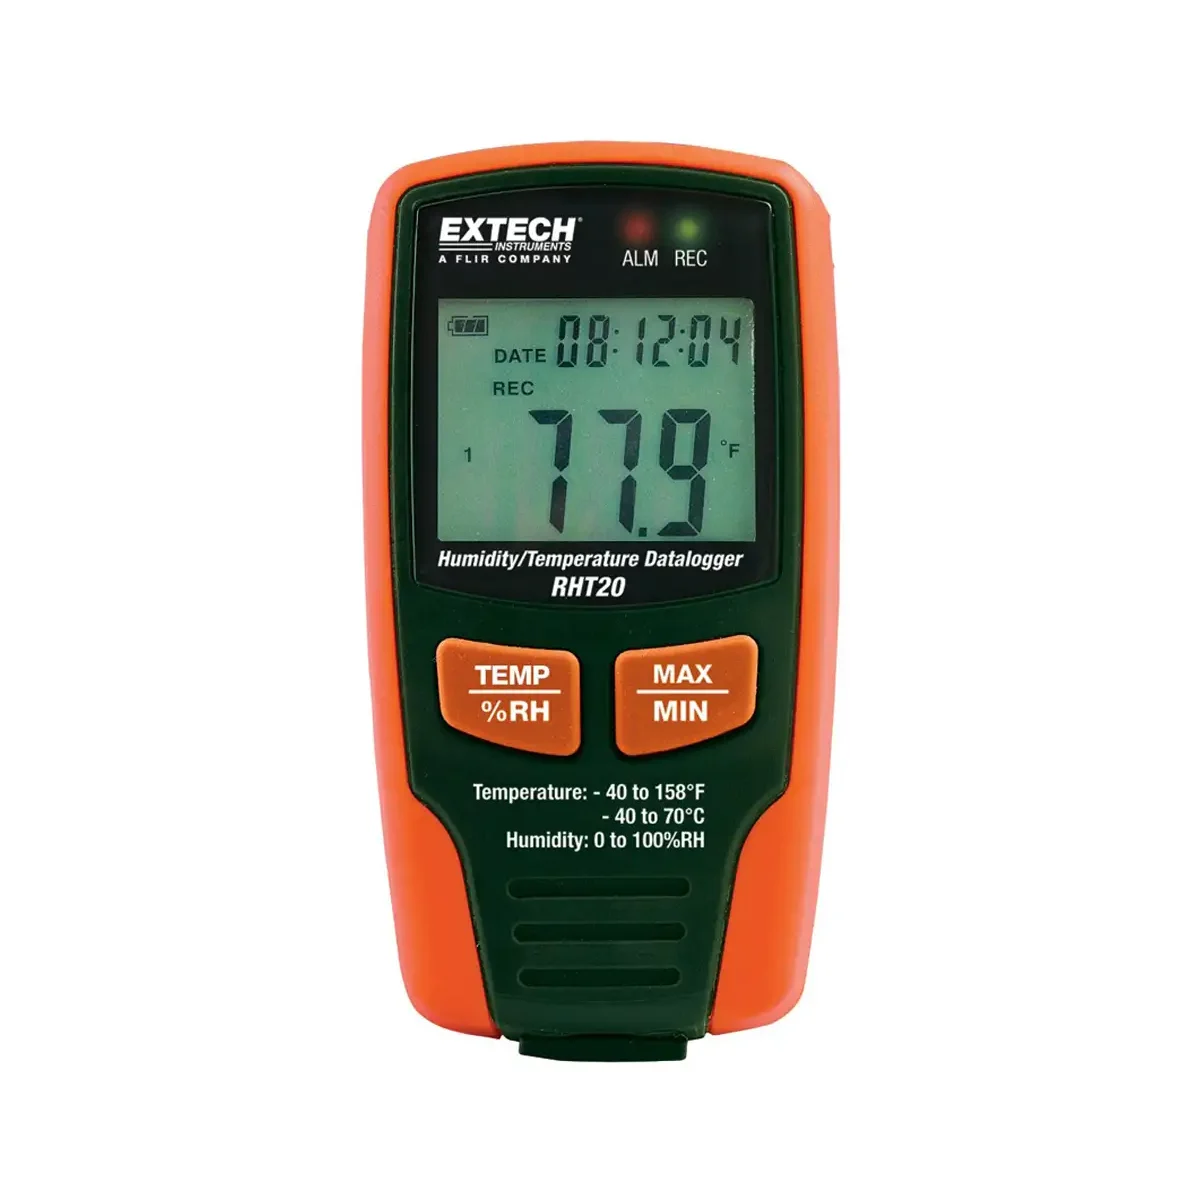 extech rht 20 zapisivač temperature i relativne vlažnosti zraka s numeričkim prikazom